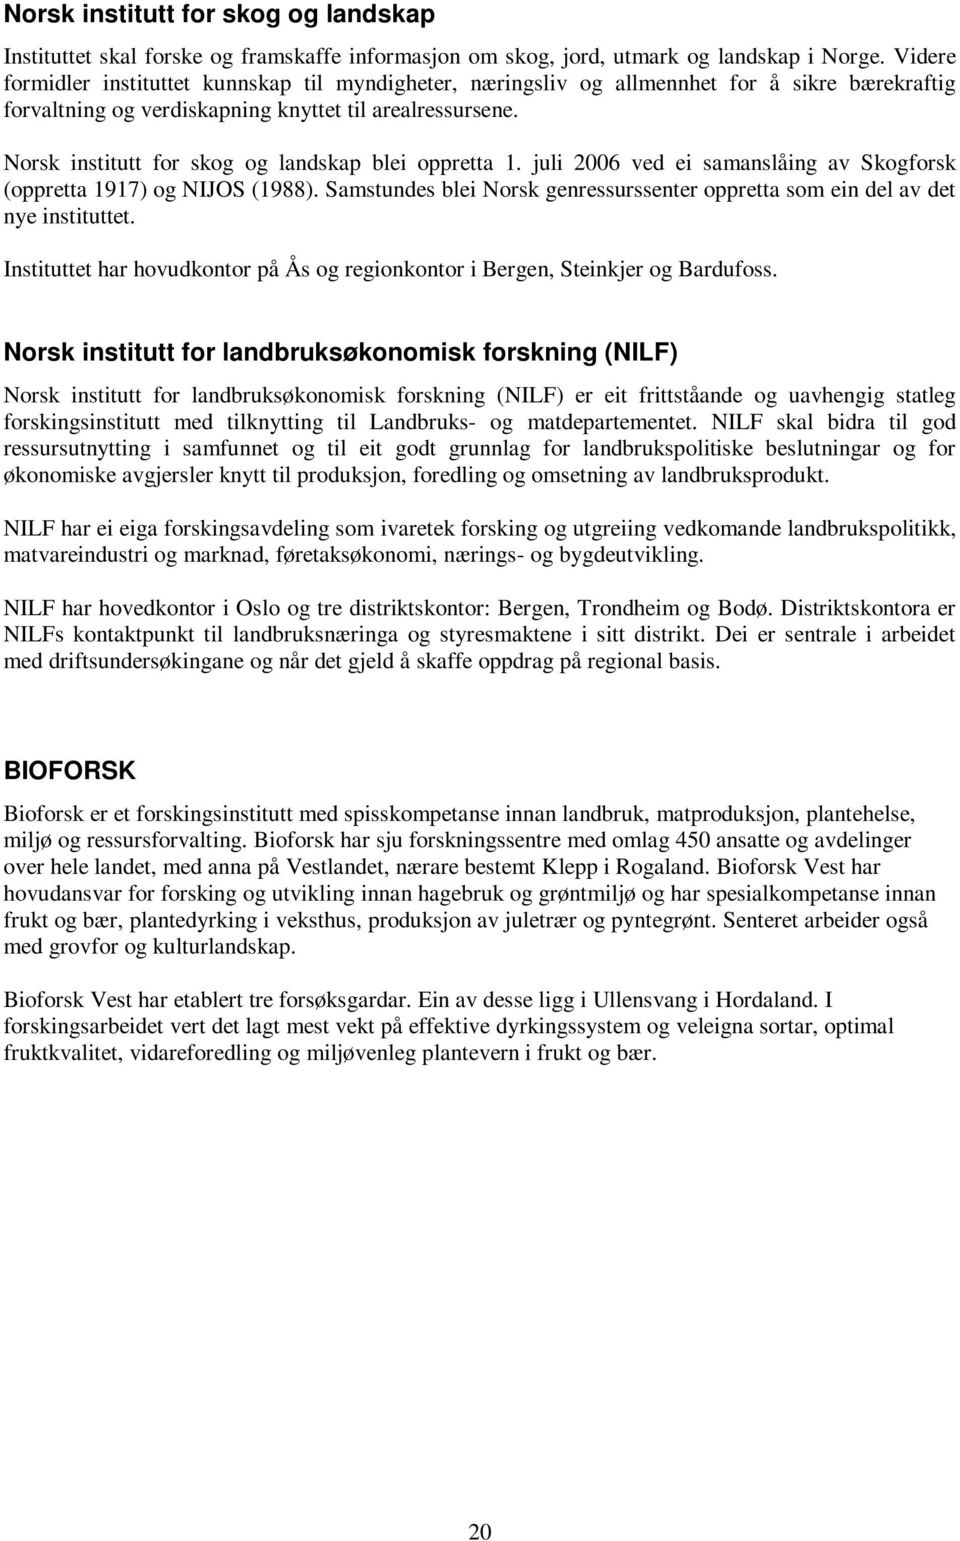 Norsk institutt for skog og landskap blei oppretta 1. juli 2006 ved ei samanslåing av Skogforsk (oppretta 1917) og NIJOS (1988).